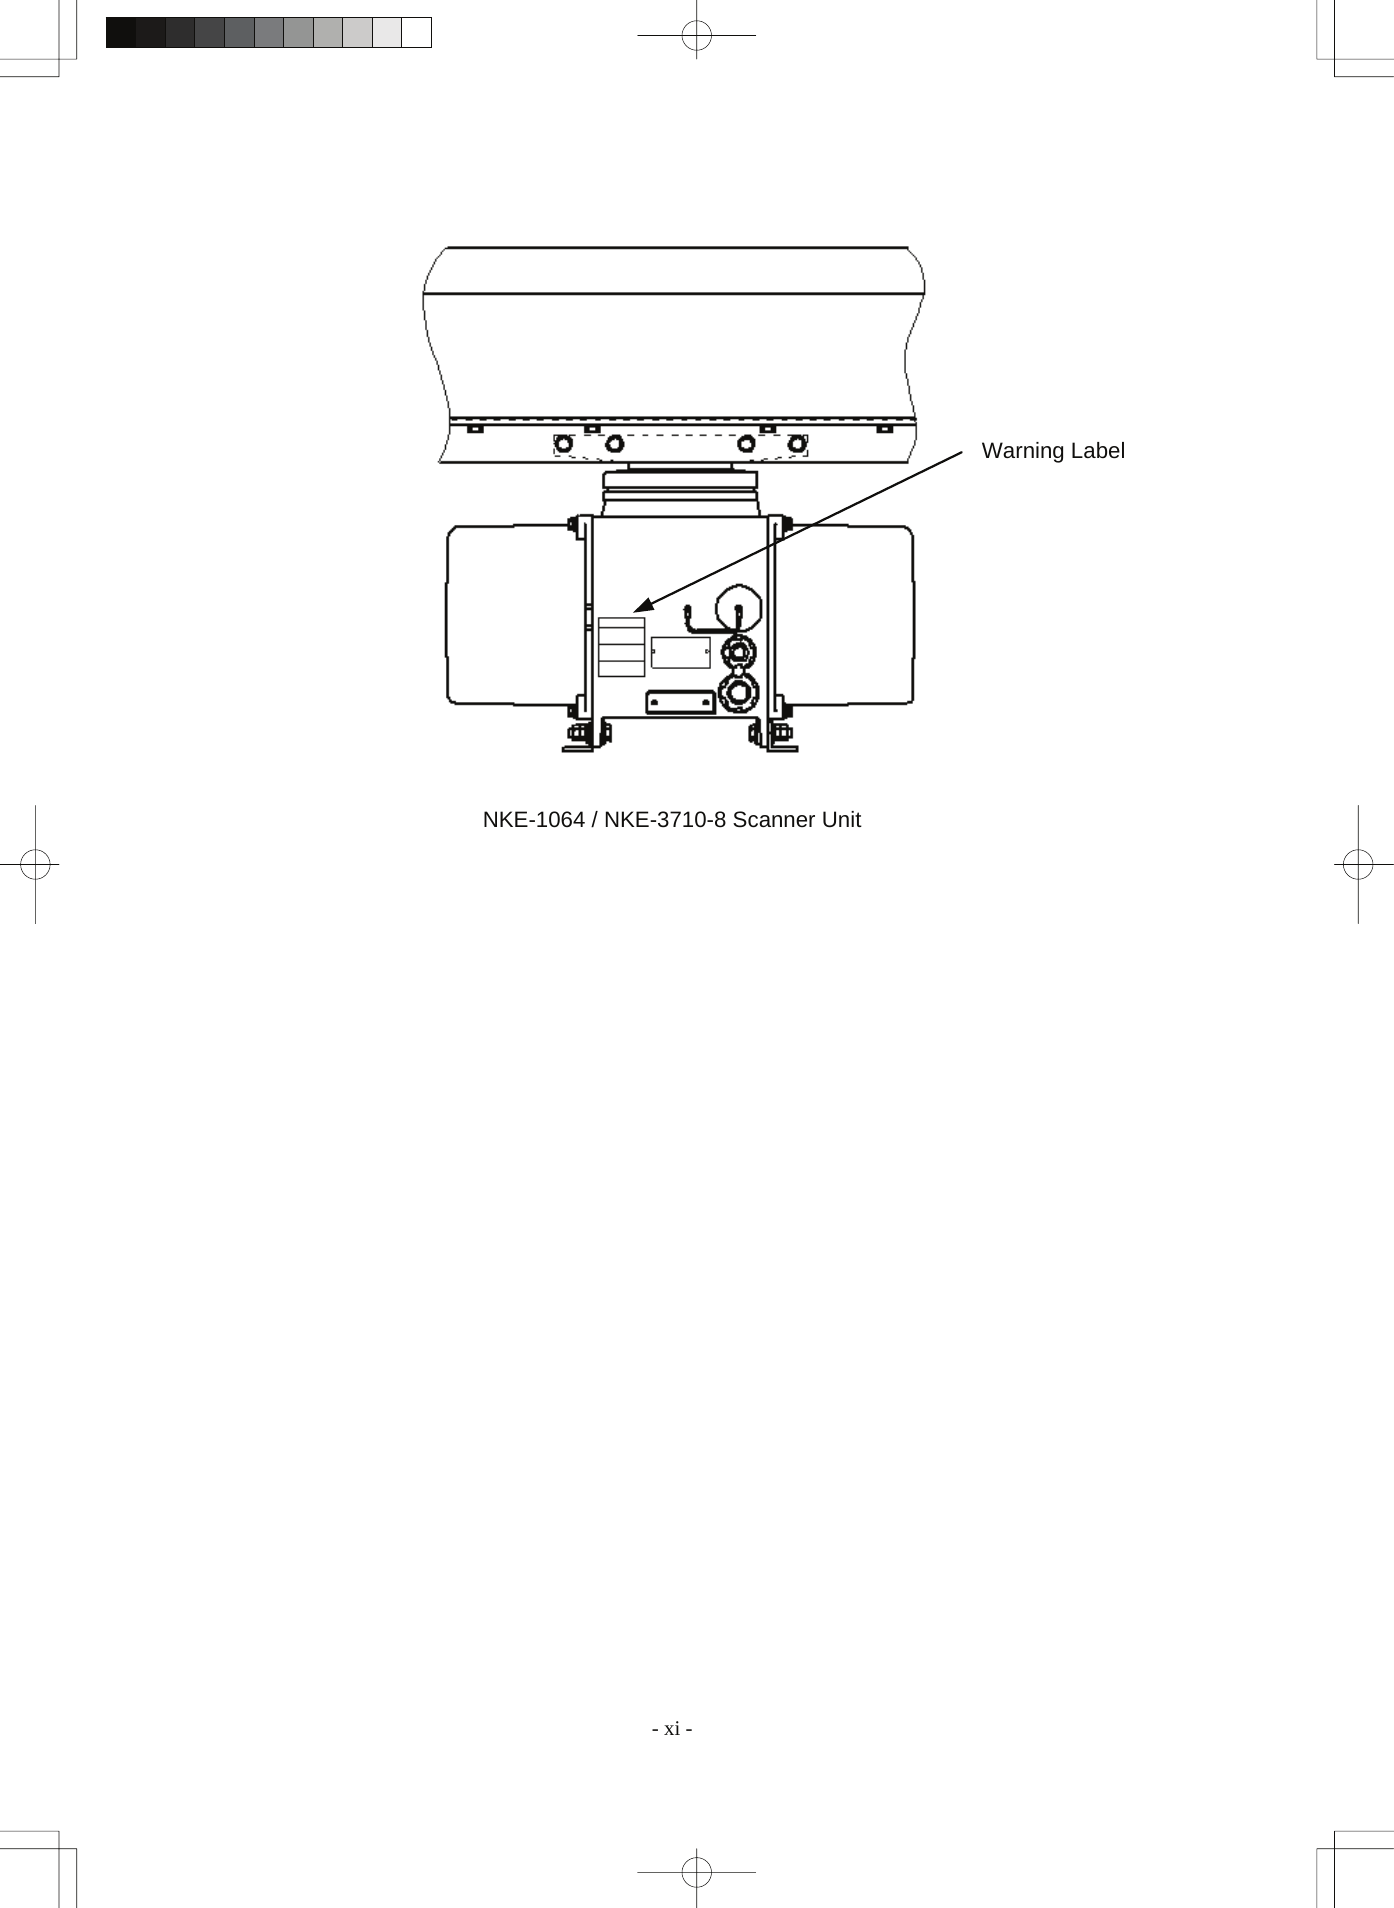  - xi - NKE-1064 / NKE-3710-8 Scanner UnitWarning Label 